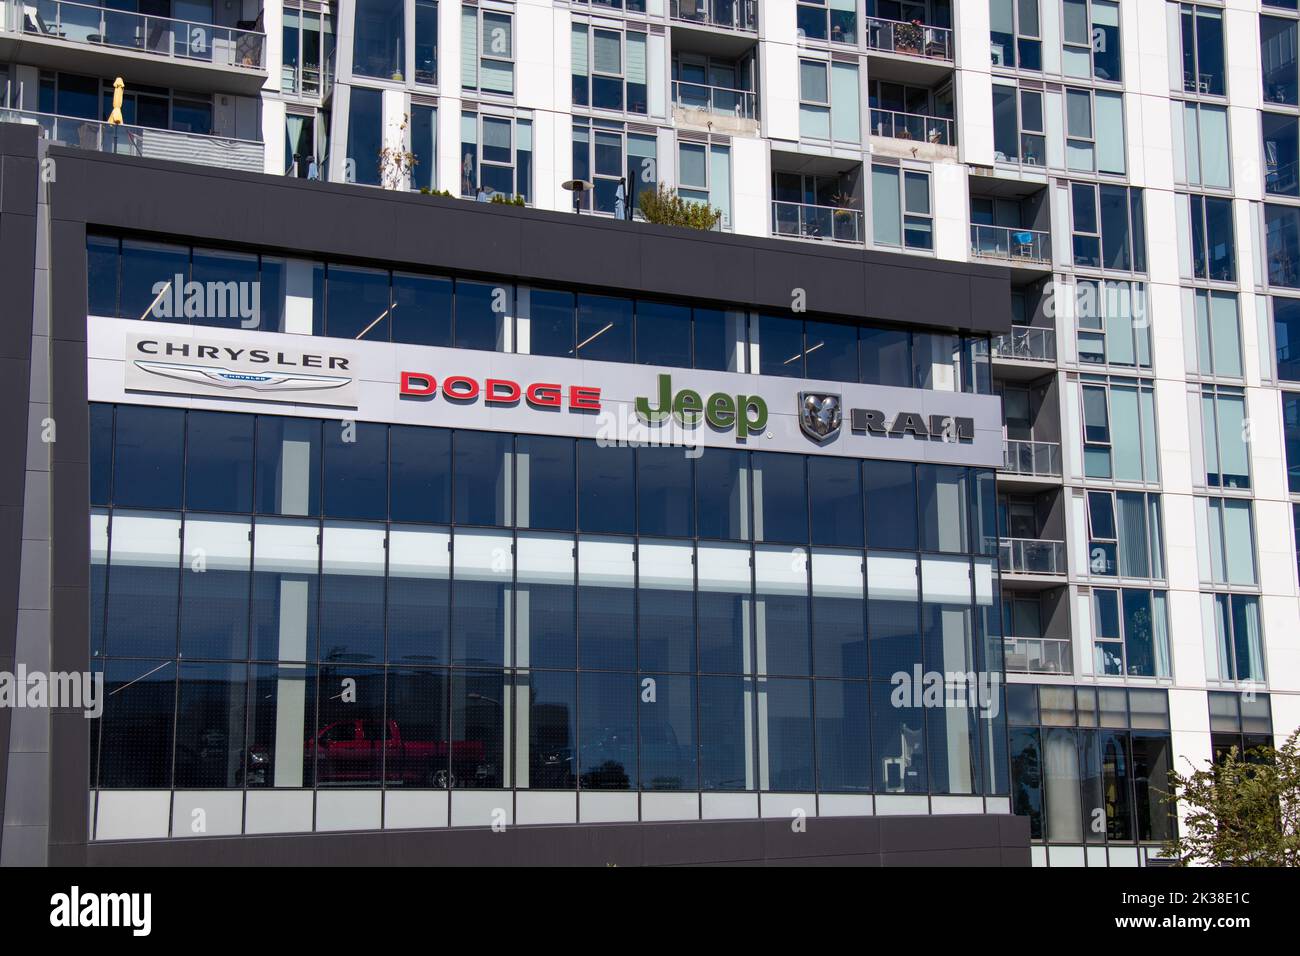 Un concessionnaire de voitures pour Chrysler, Dodge, Jeep et RAM Trucks, toutes les marques Stellantis, est vu dans le centre-ville de Toronto, situé à la base d'un condo. Banque D'Images